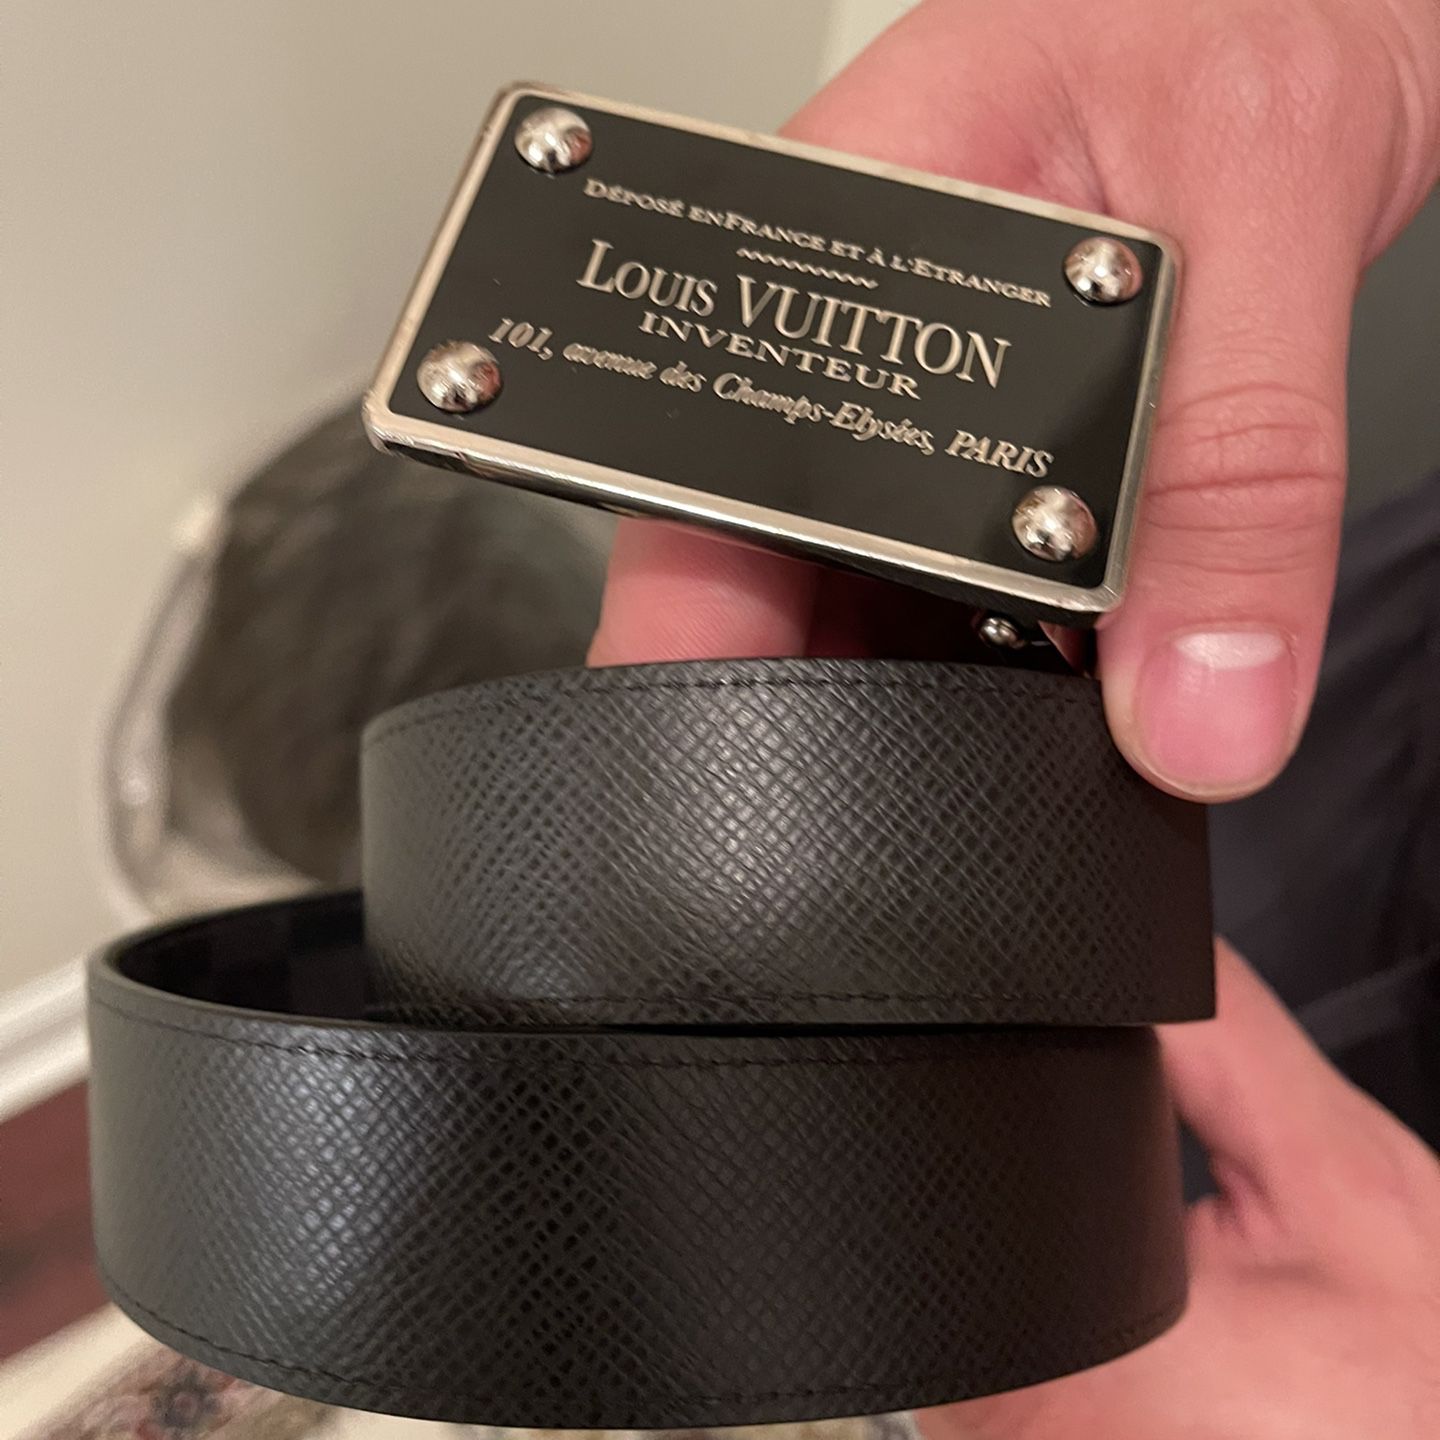 Belt Louis Vuitton inventeur